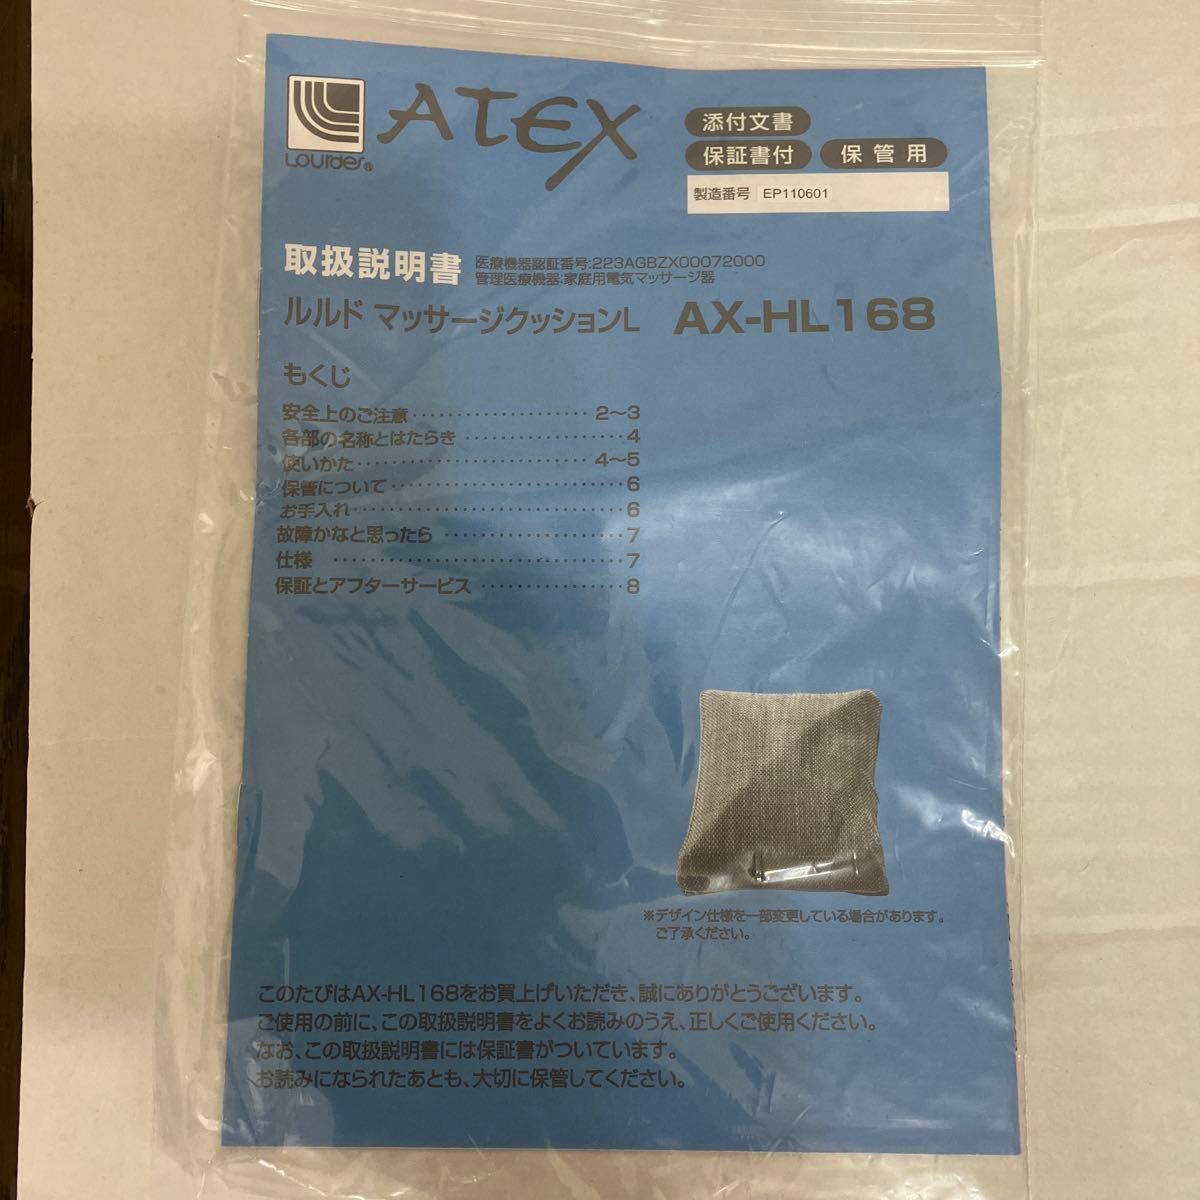 サンドベージュ：be) ATEX ルルド マッサージクッション L サンドベージュ AX-HL168be